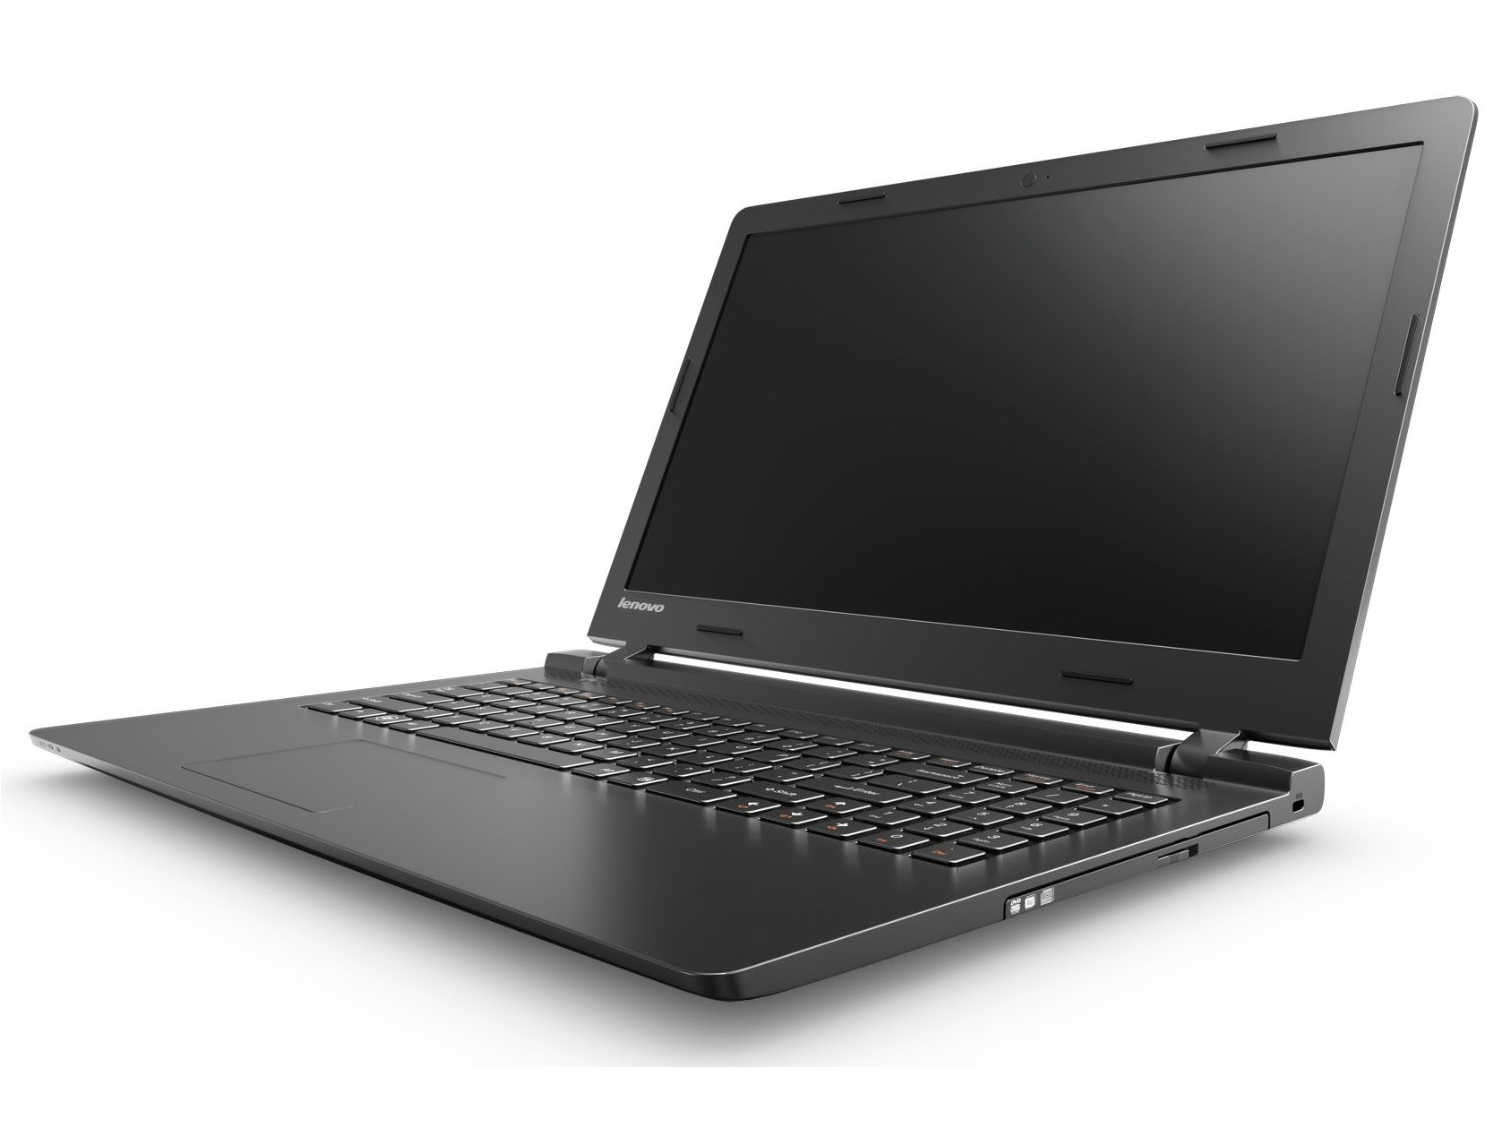 Lenovo B50 Series - Notebookcheck.net External Reviews